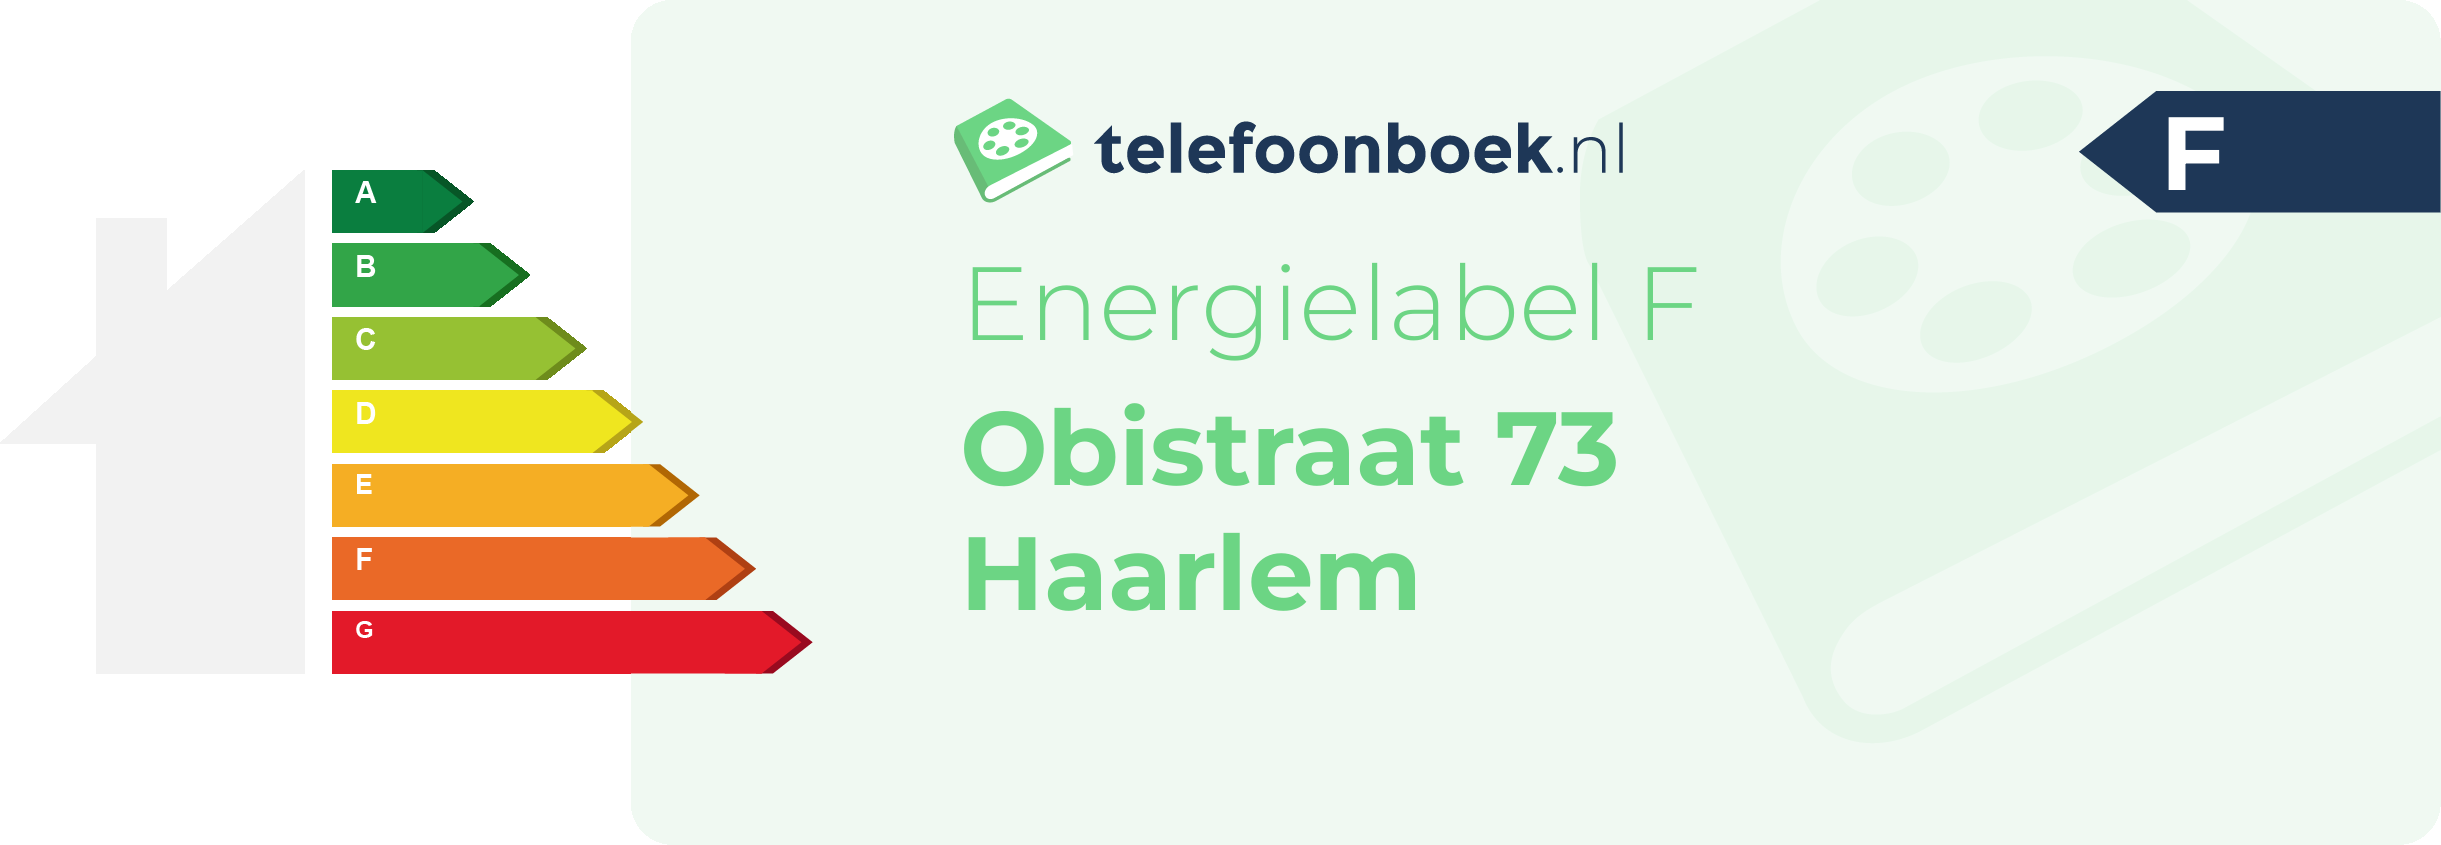 Energielabel Obistraat 73 Haarlem